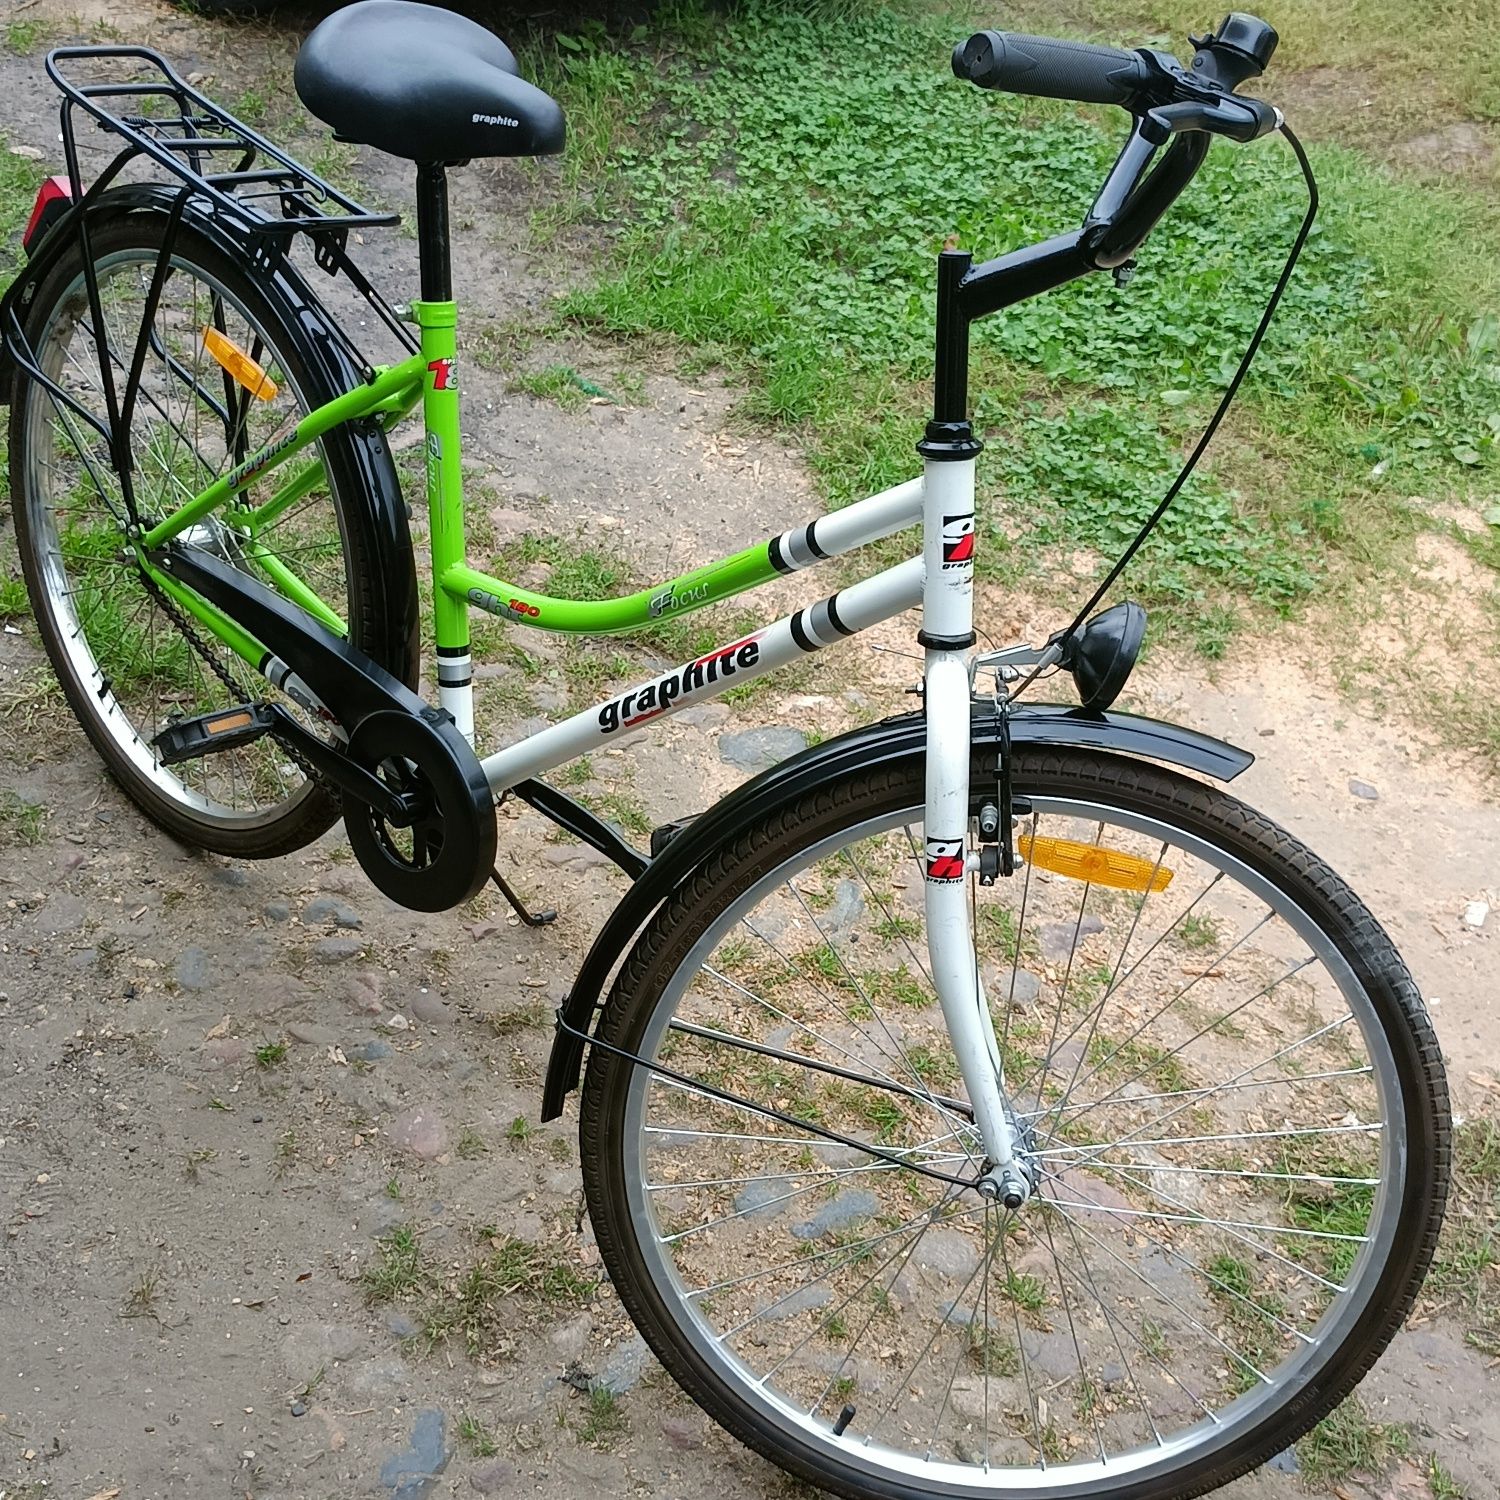 Sprzedam rower miejski -młodzieżowy